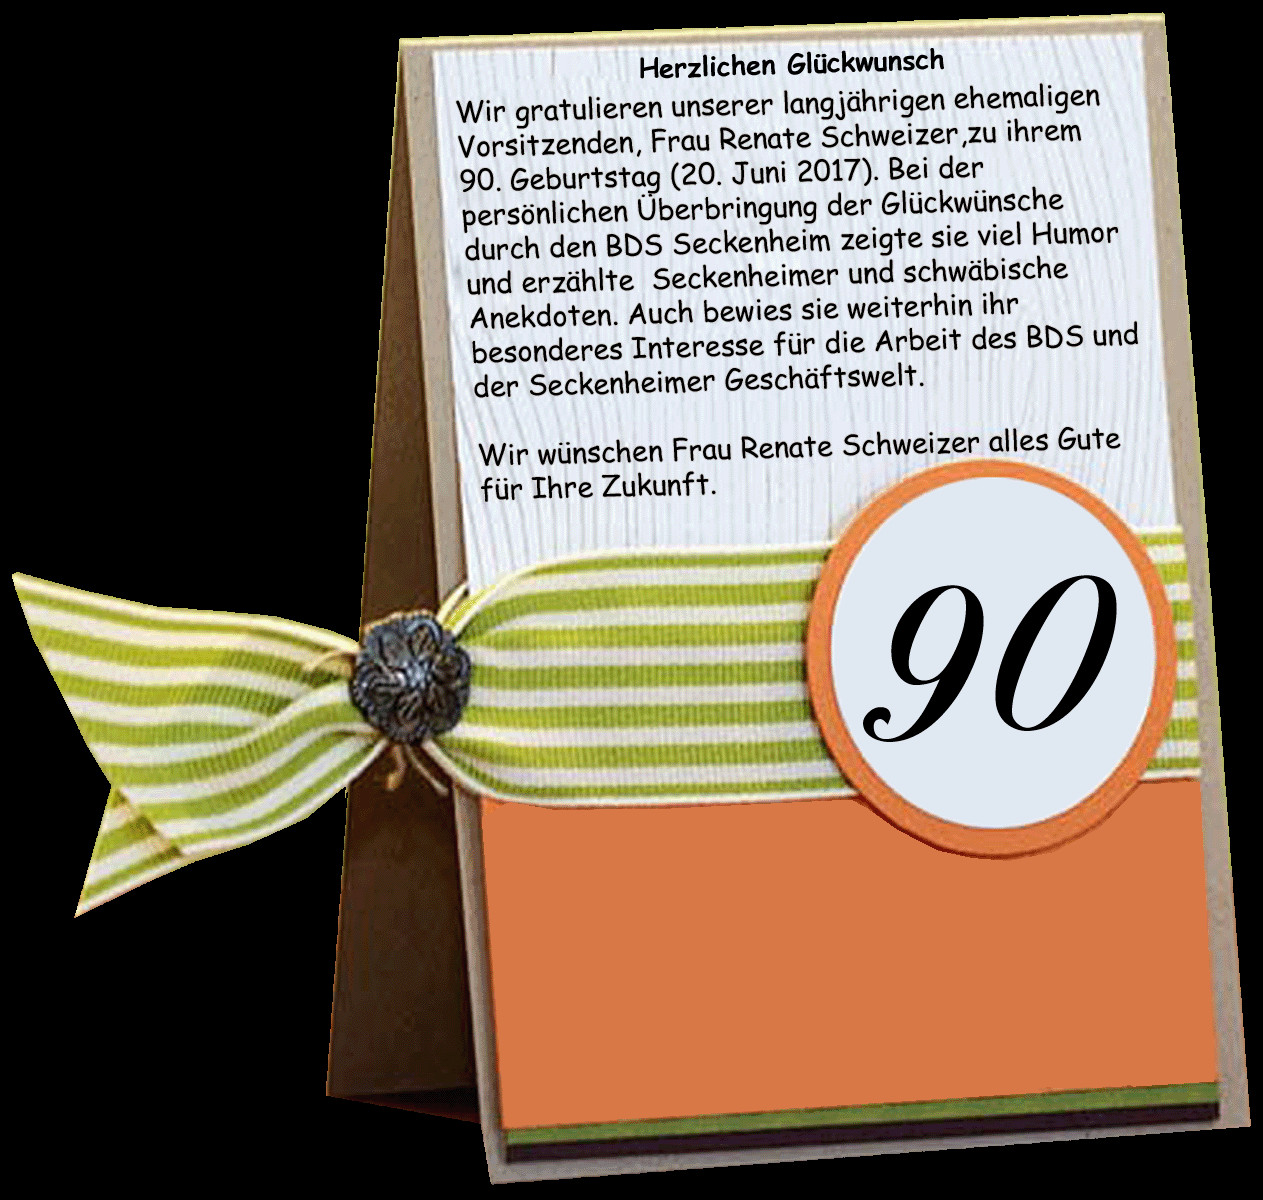 Geburtstagswünsche 90 Jahre
 Geburtstagskarte 90 jahre – Beliebte Geschenke für Ihre